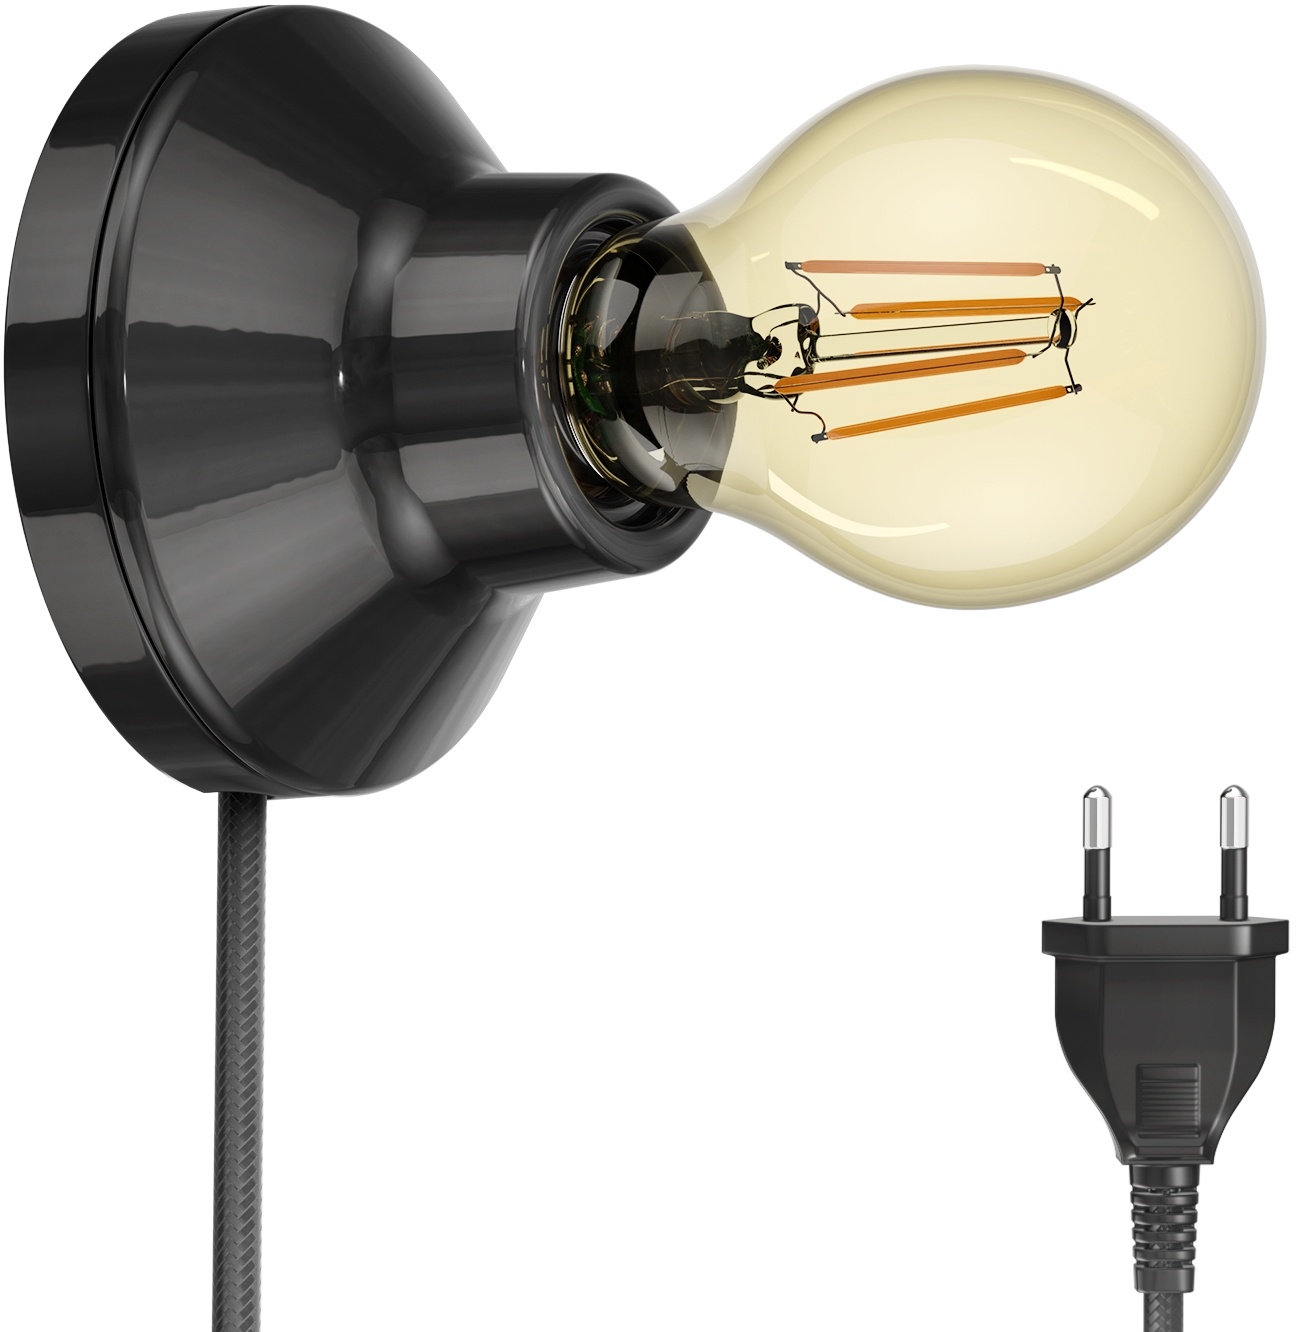 ledscom.de E27 Porzellan Lampen-Fassung Elektra, rund mit Stecker und Schalter, schwarz 90mm inkl. E27 Leuchtmittel 471lm Gold Vintage extra-warm-weiß